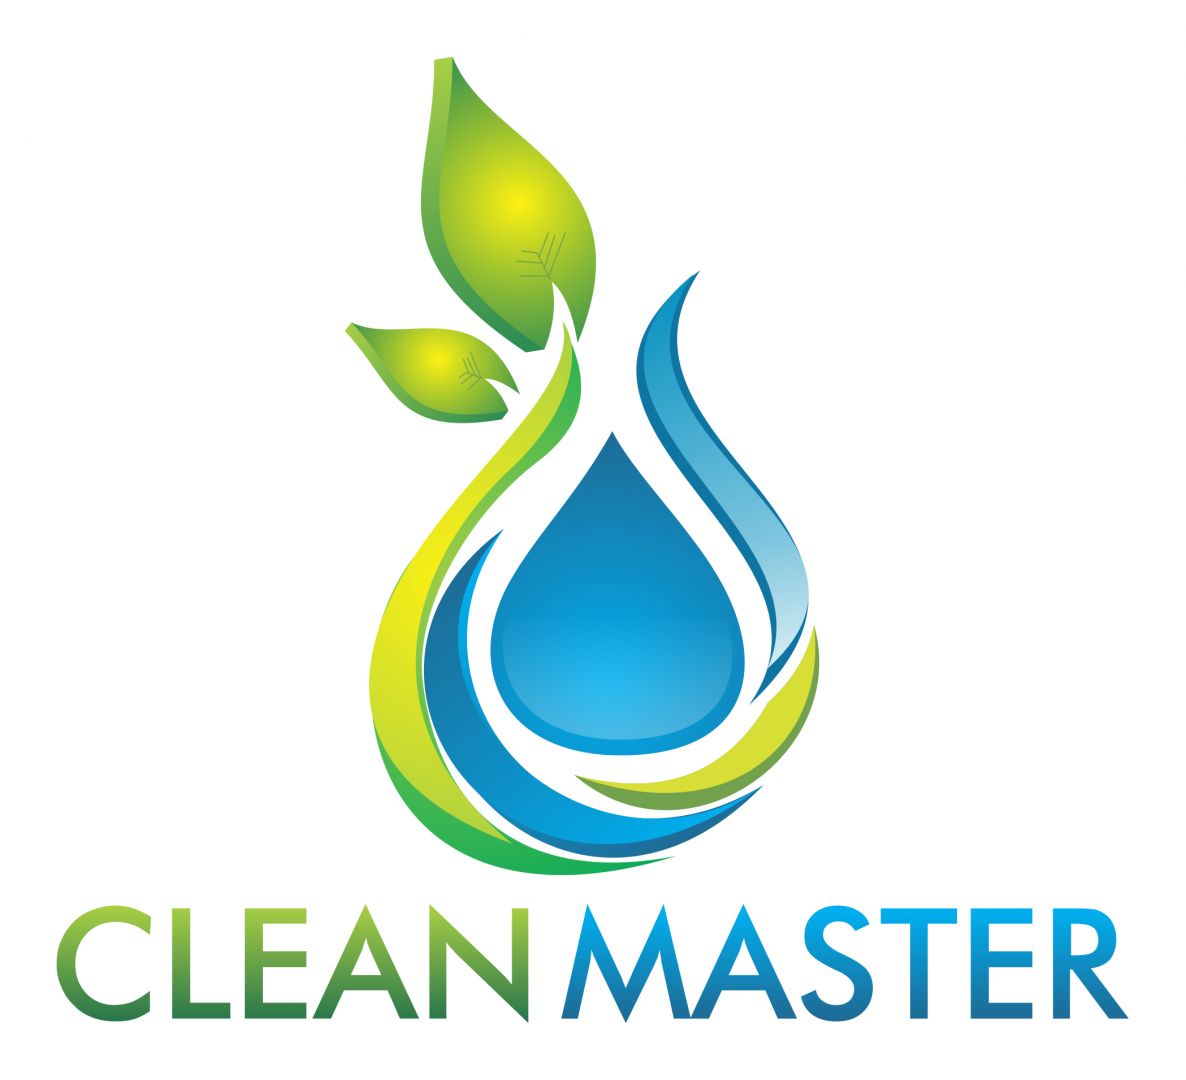 clean master clean master clean master